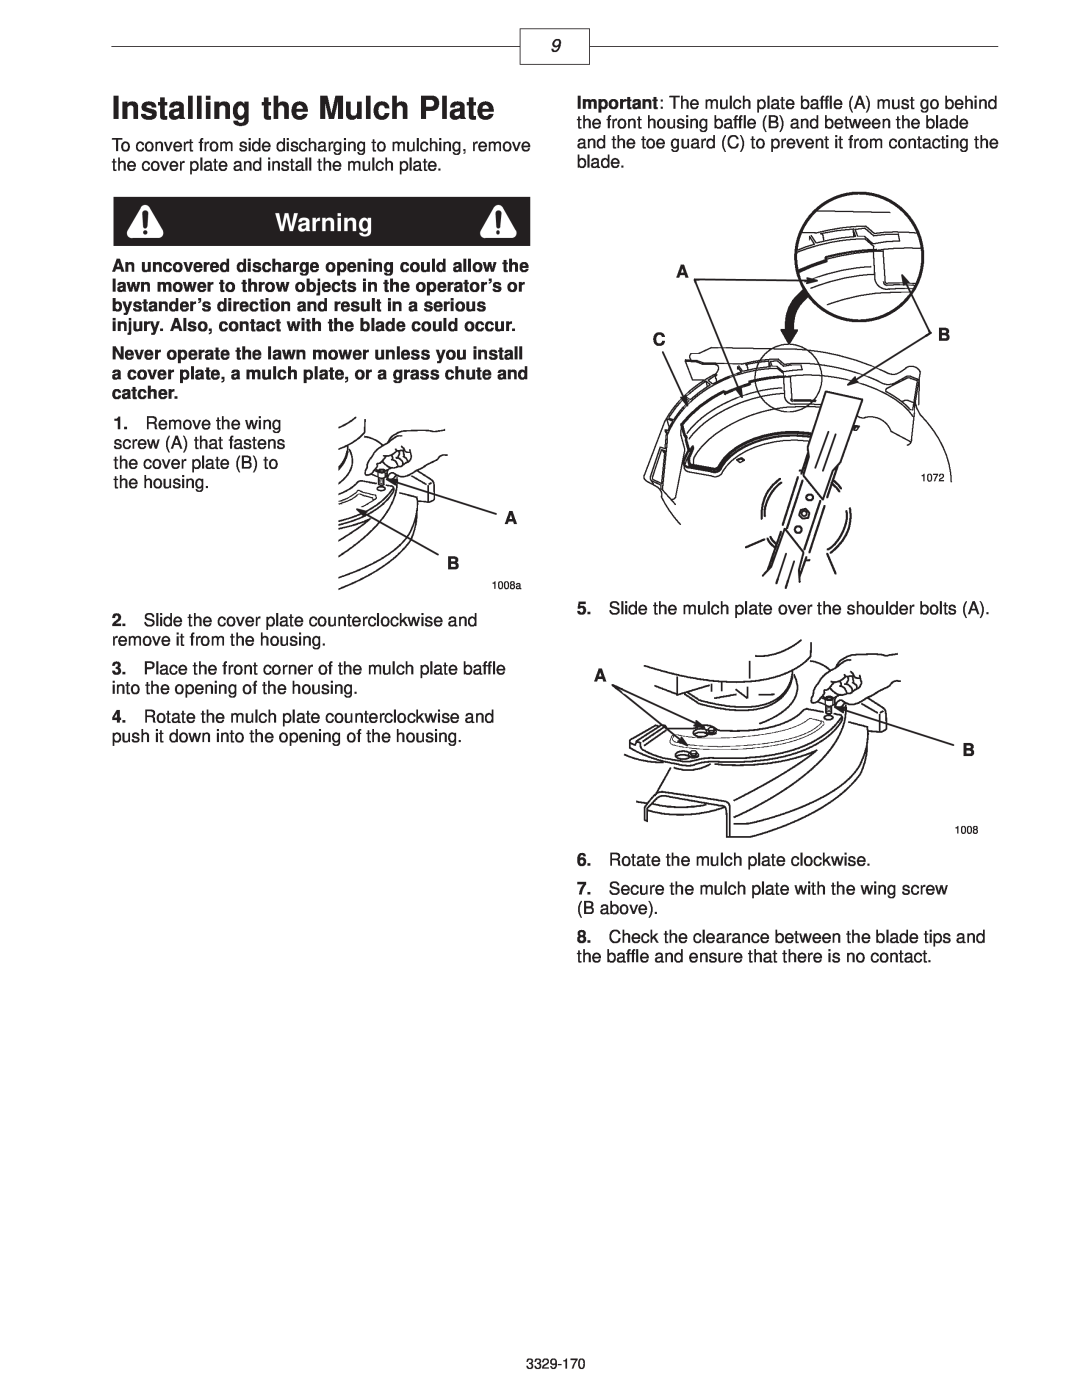 Lawn-Boy 10356, 10357, 10358 manual Installing the Mulch Plate, A C B 